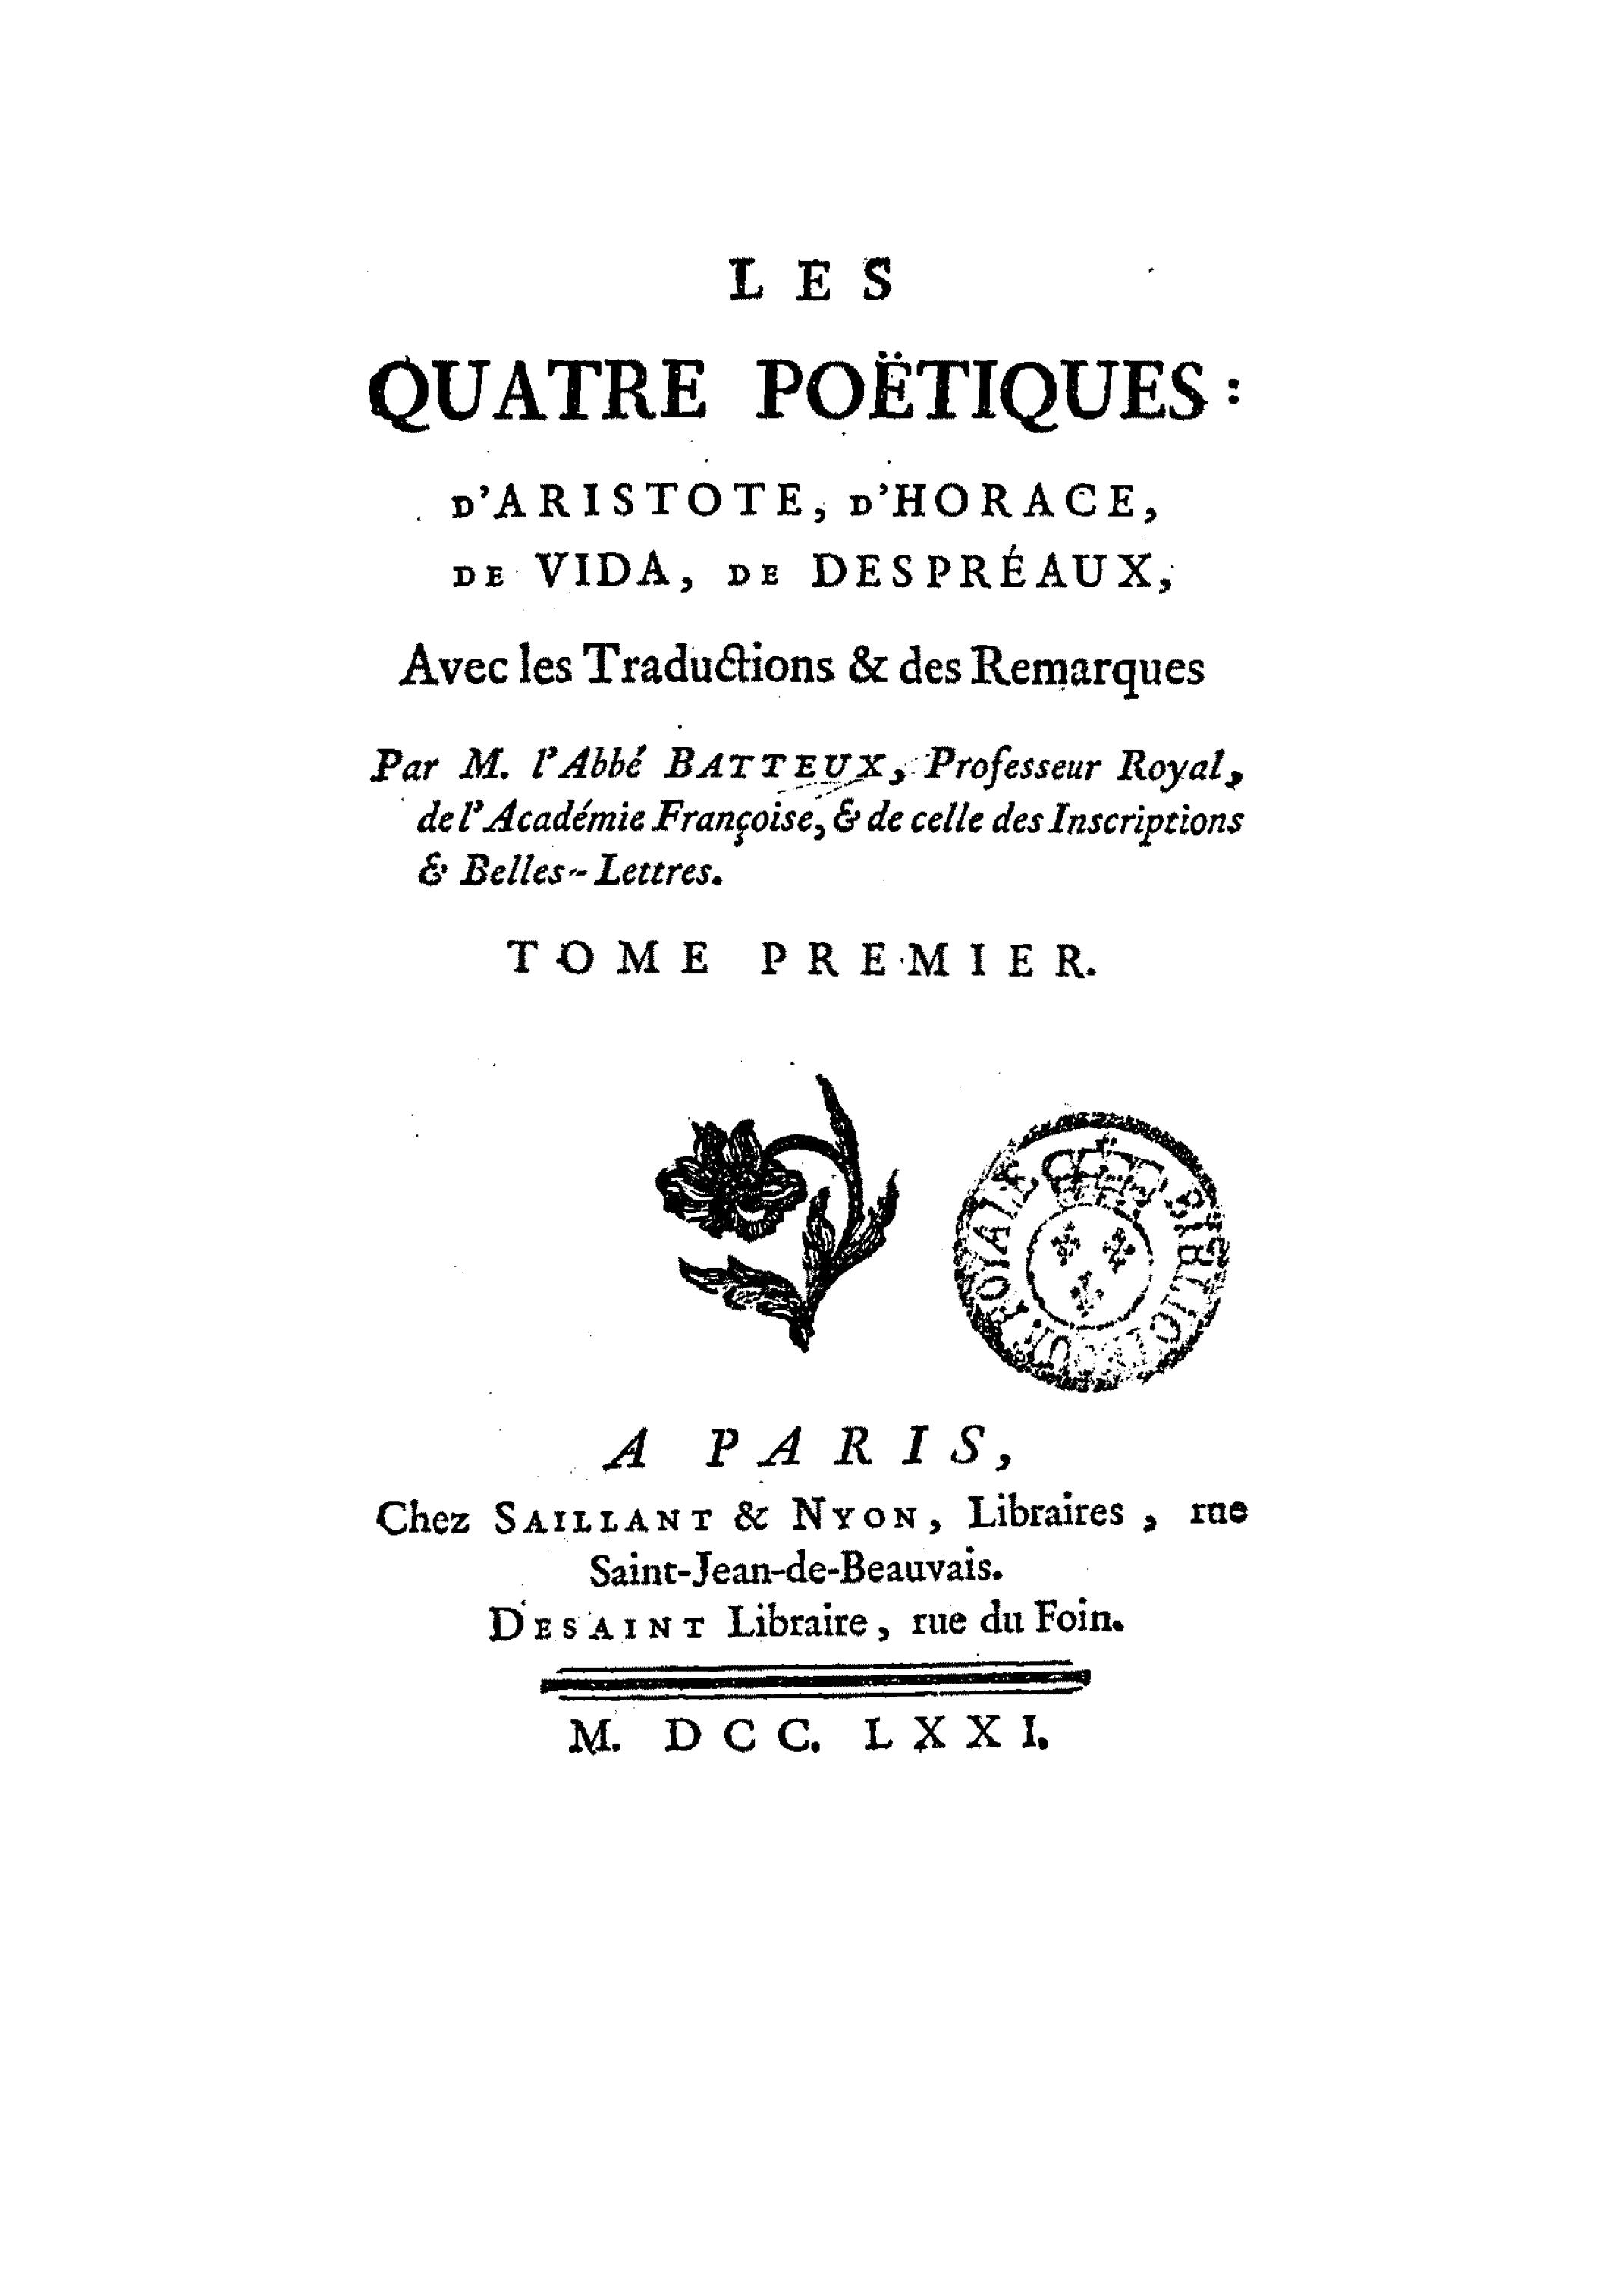 Les quatre Poëtiques: d'Aristote, d'Horace, de Vida, de Despréaux, avec les traductions et des remarques, Tome premier